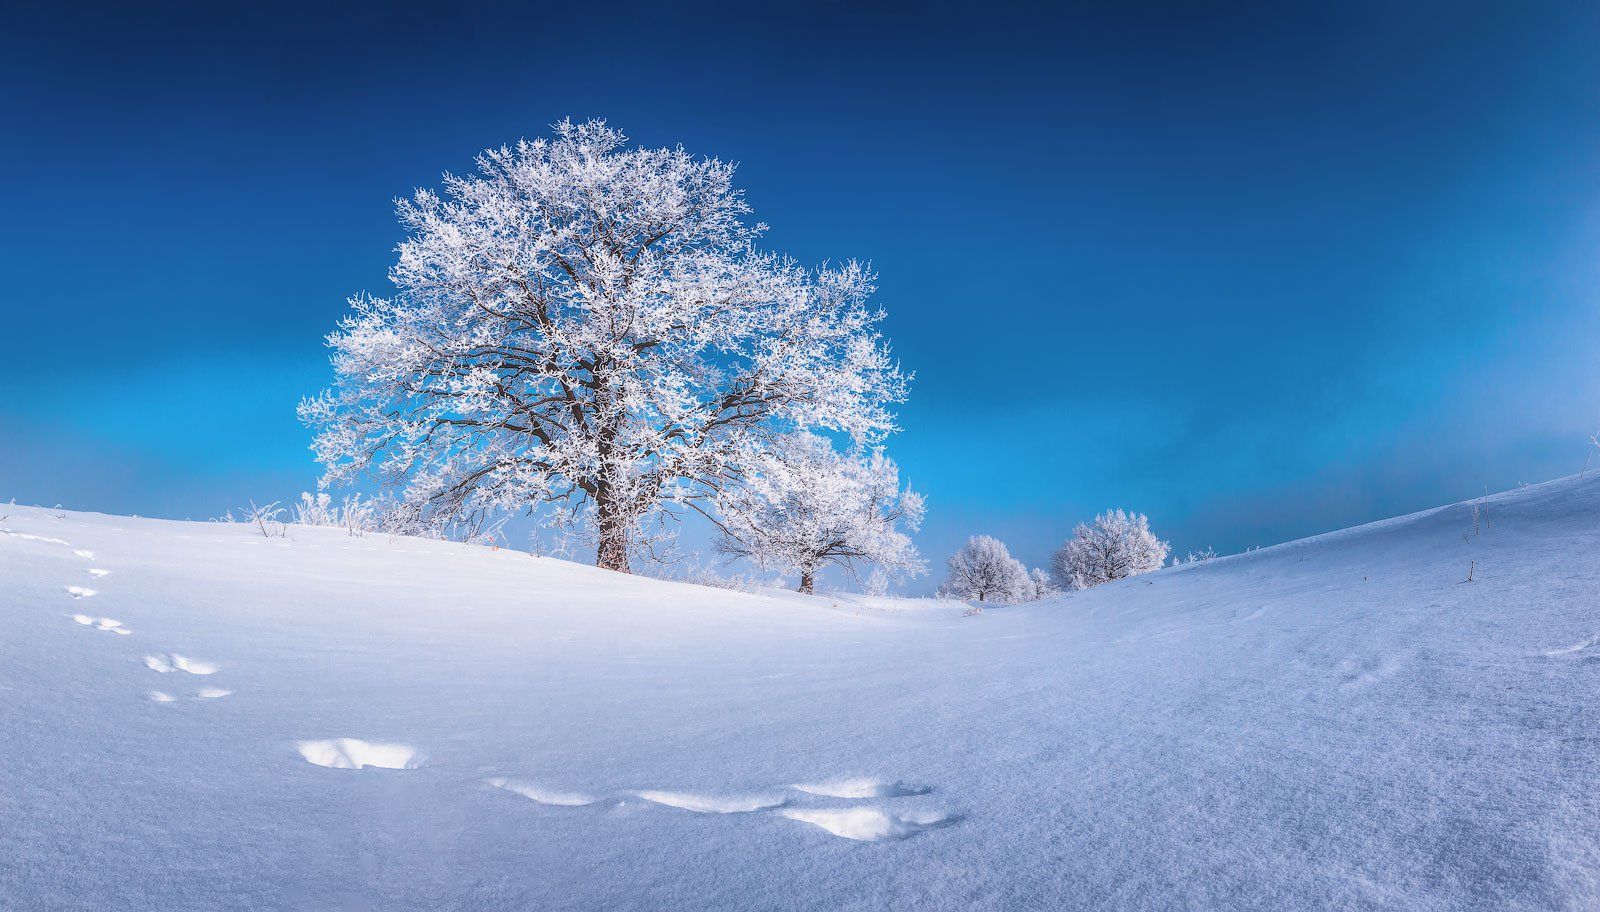 дерево, иней, зима, мороз, Михаил Дубровинский